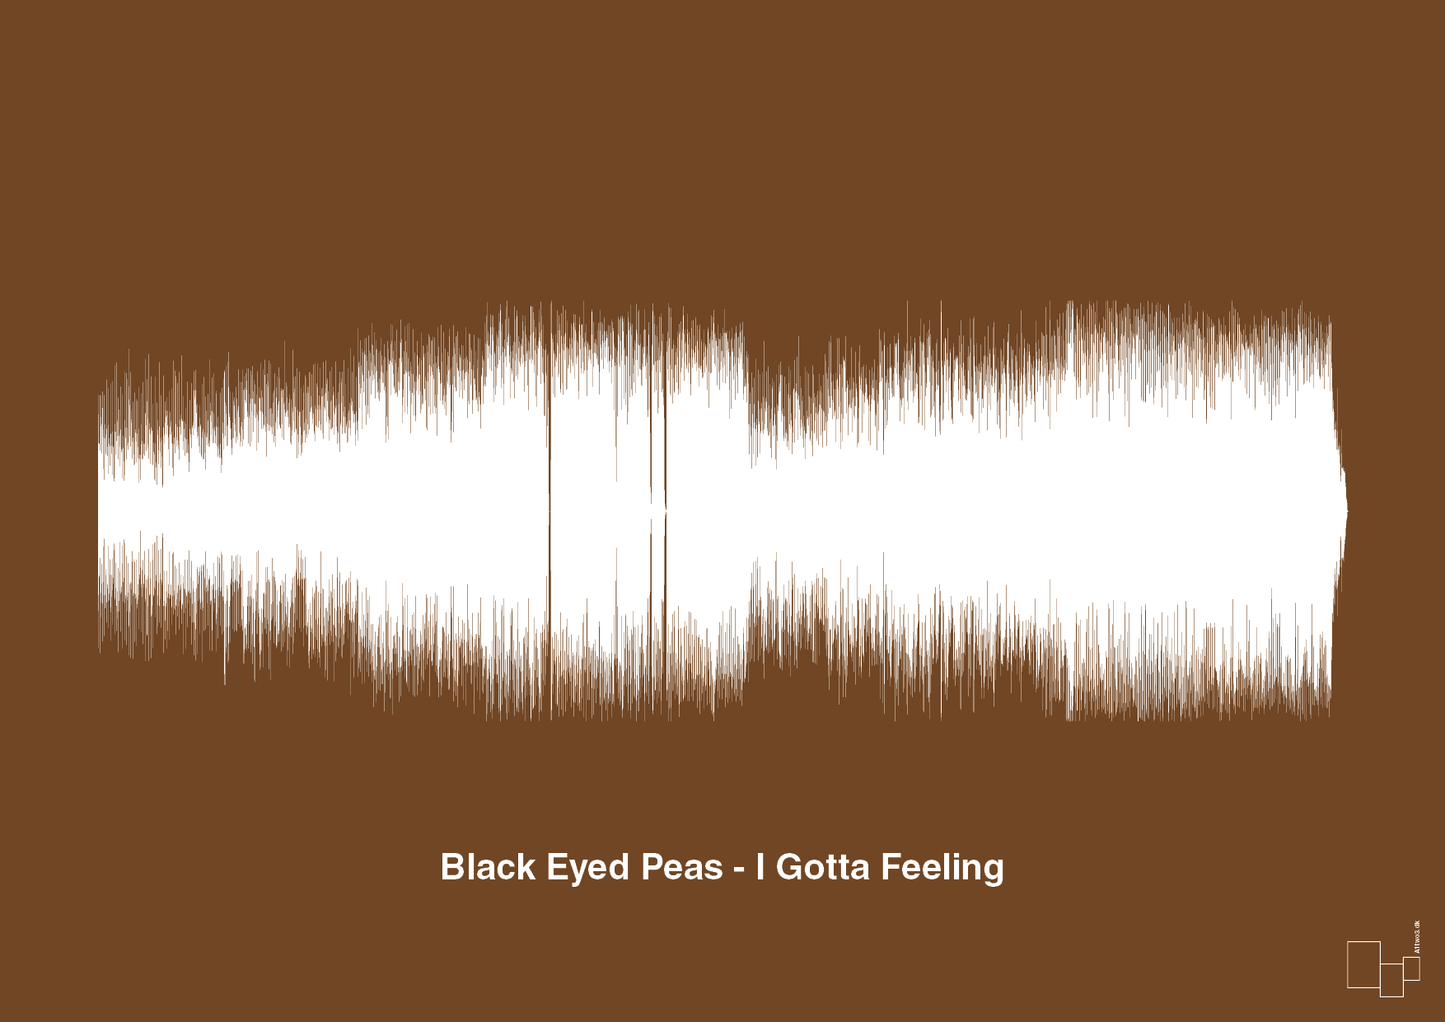 black eyed peas - i gotta feeling - Plakat med Musik i Dark Brown